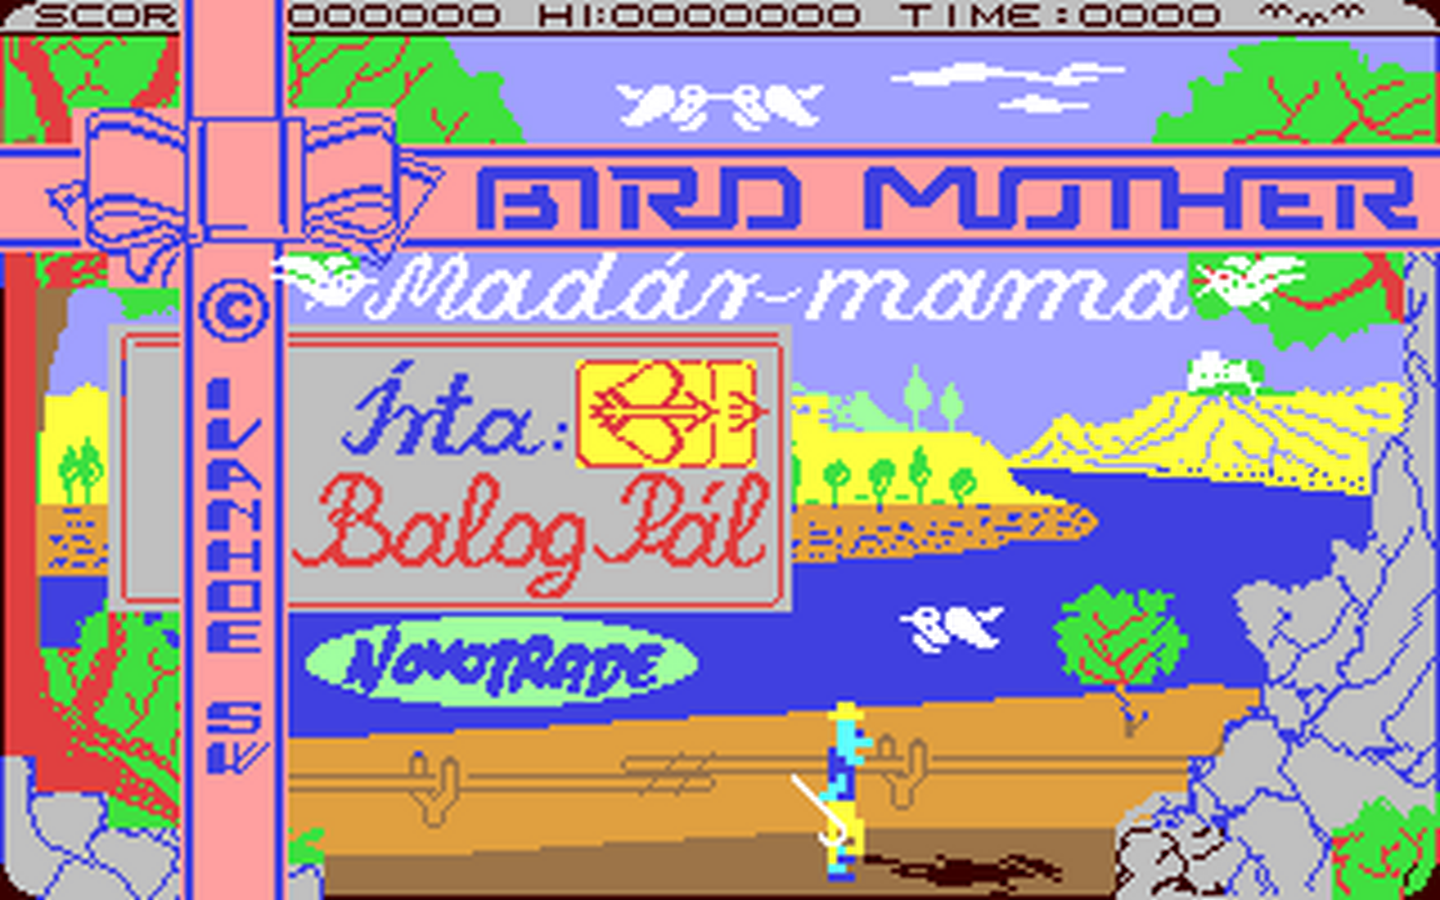 C64 GameBase Bird_Mother Novotrade